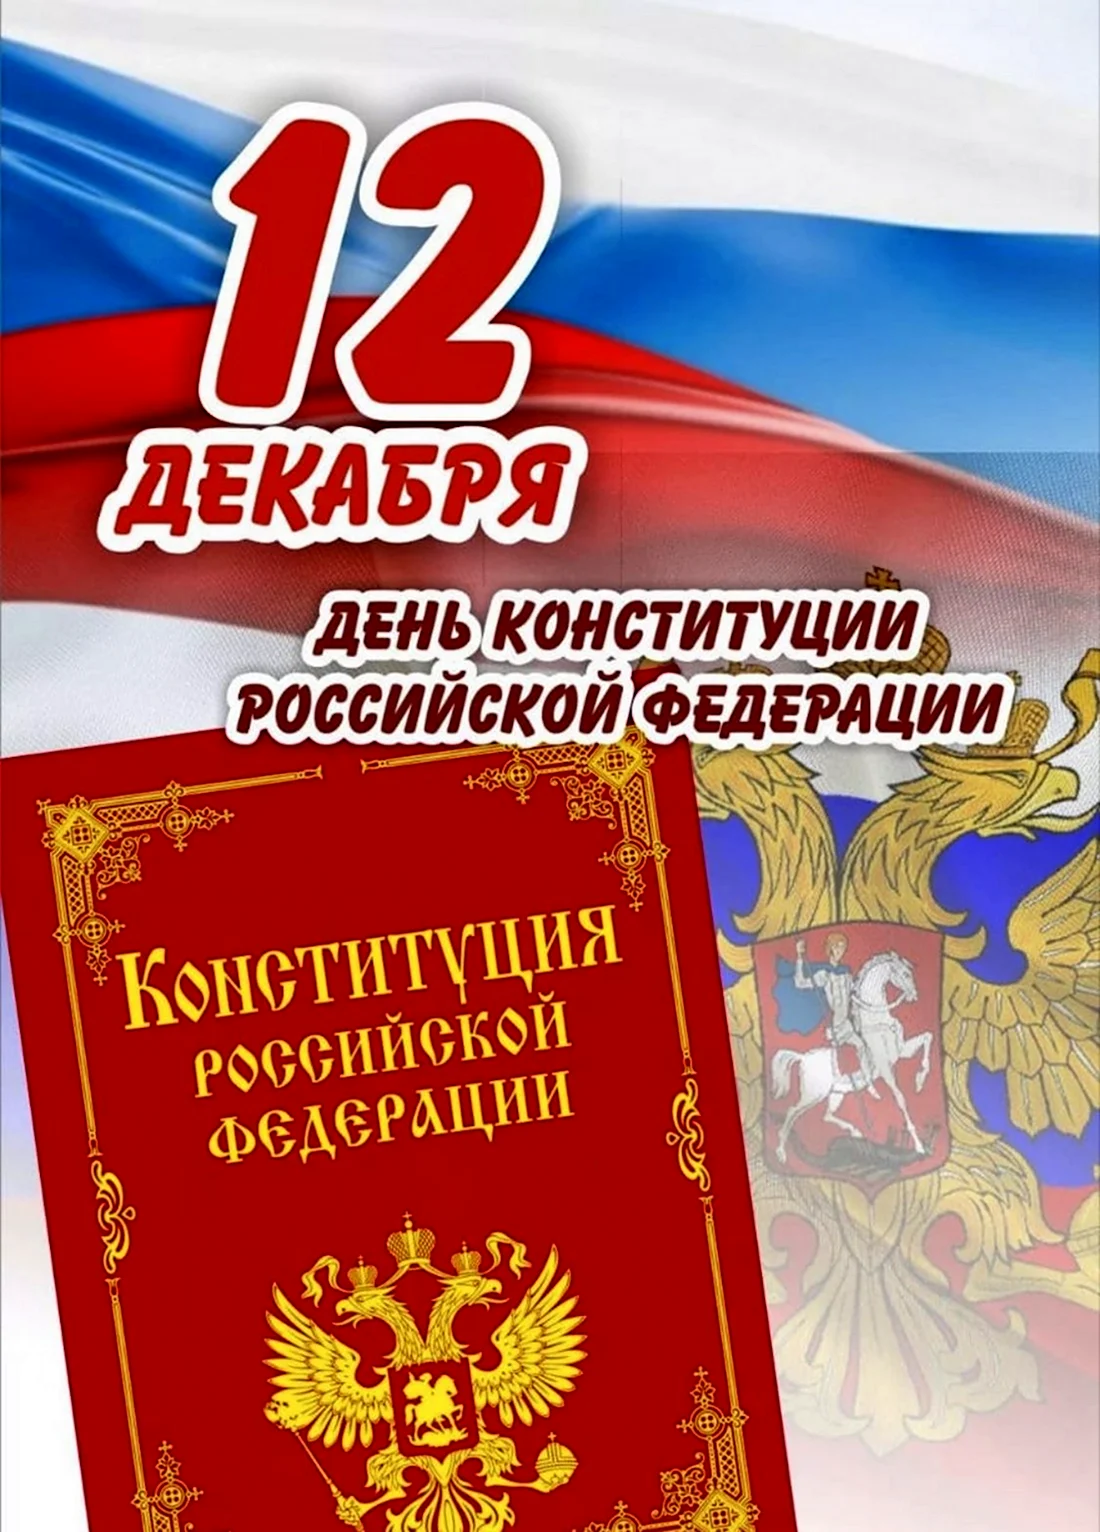 12 Декабря день Конституции Российской Федерации. Прикольная открытка